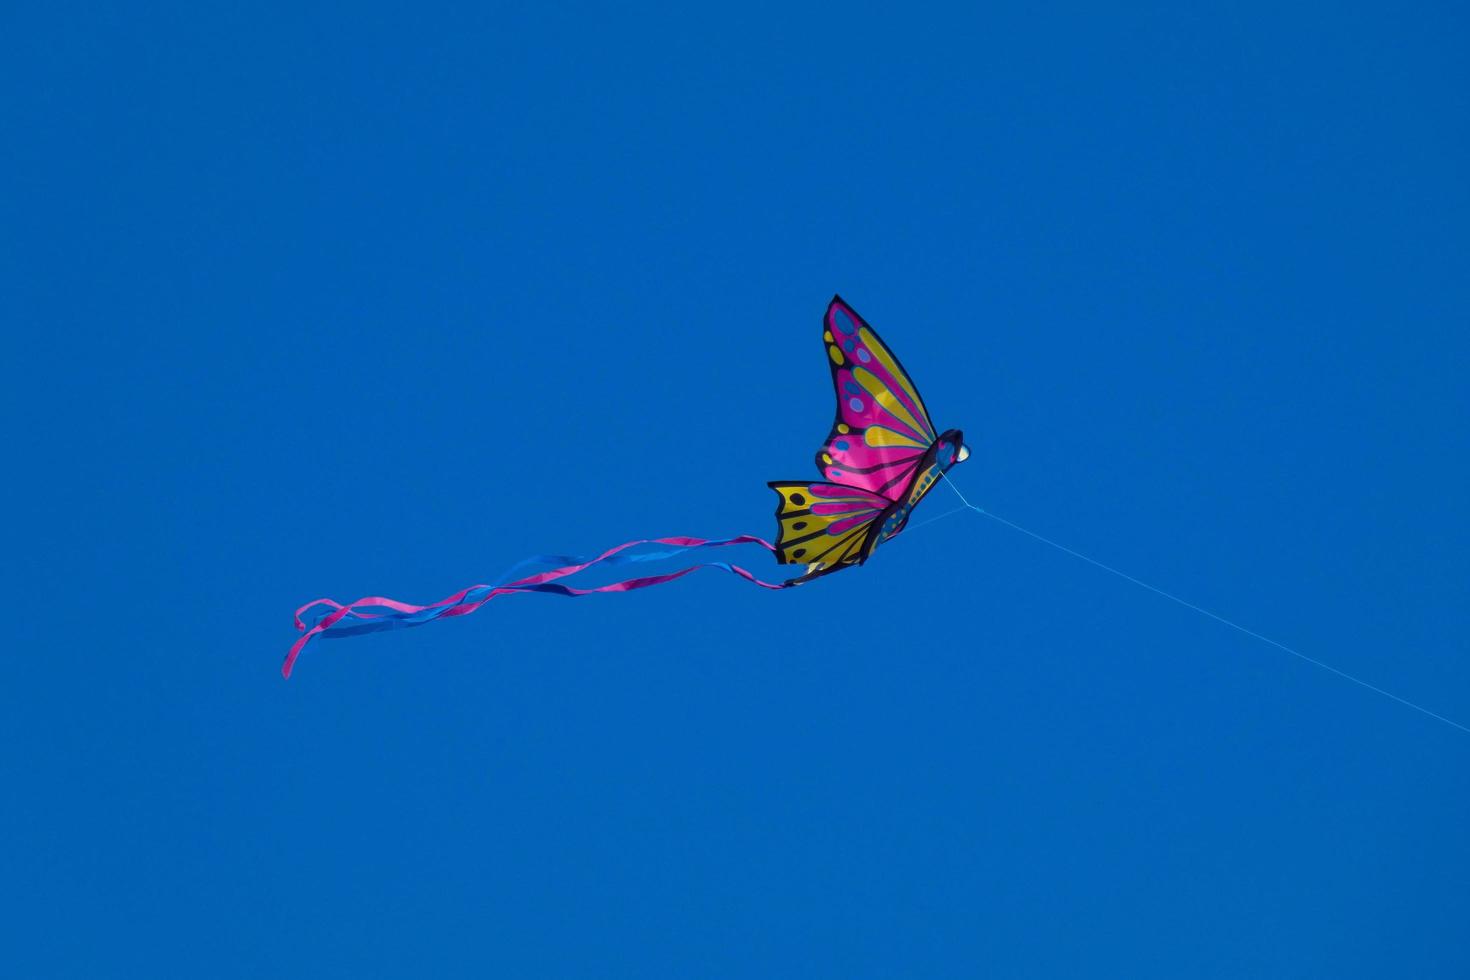 kleurrijk vlieger vliegend onder de blauw lucht foto